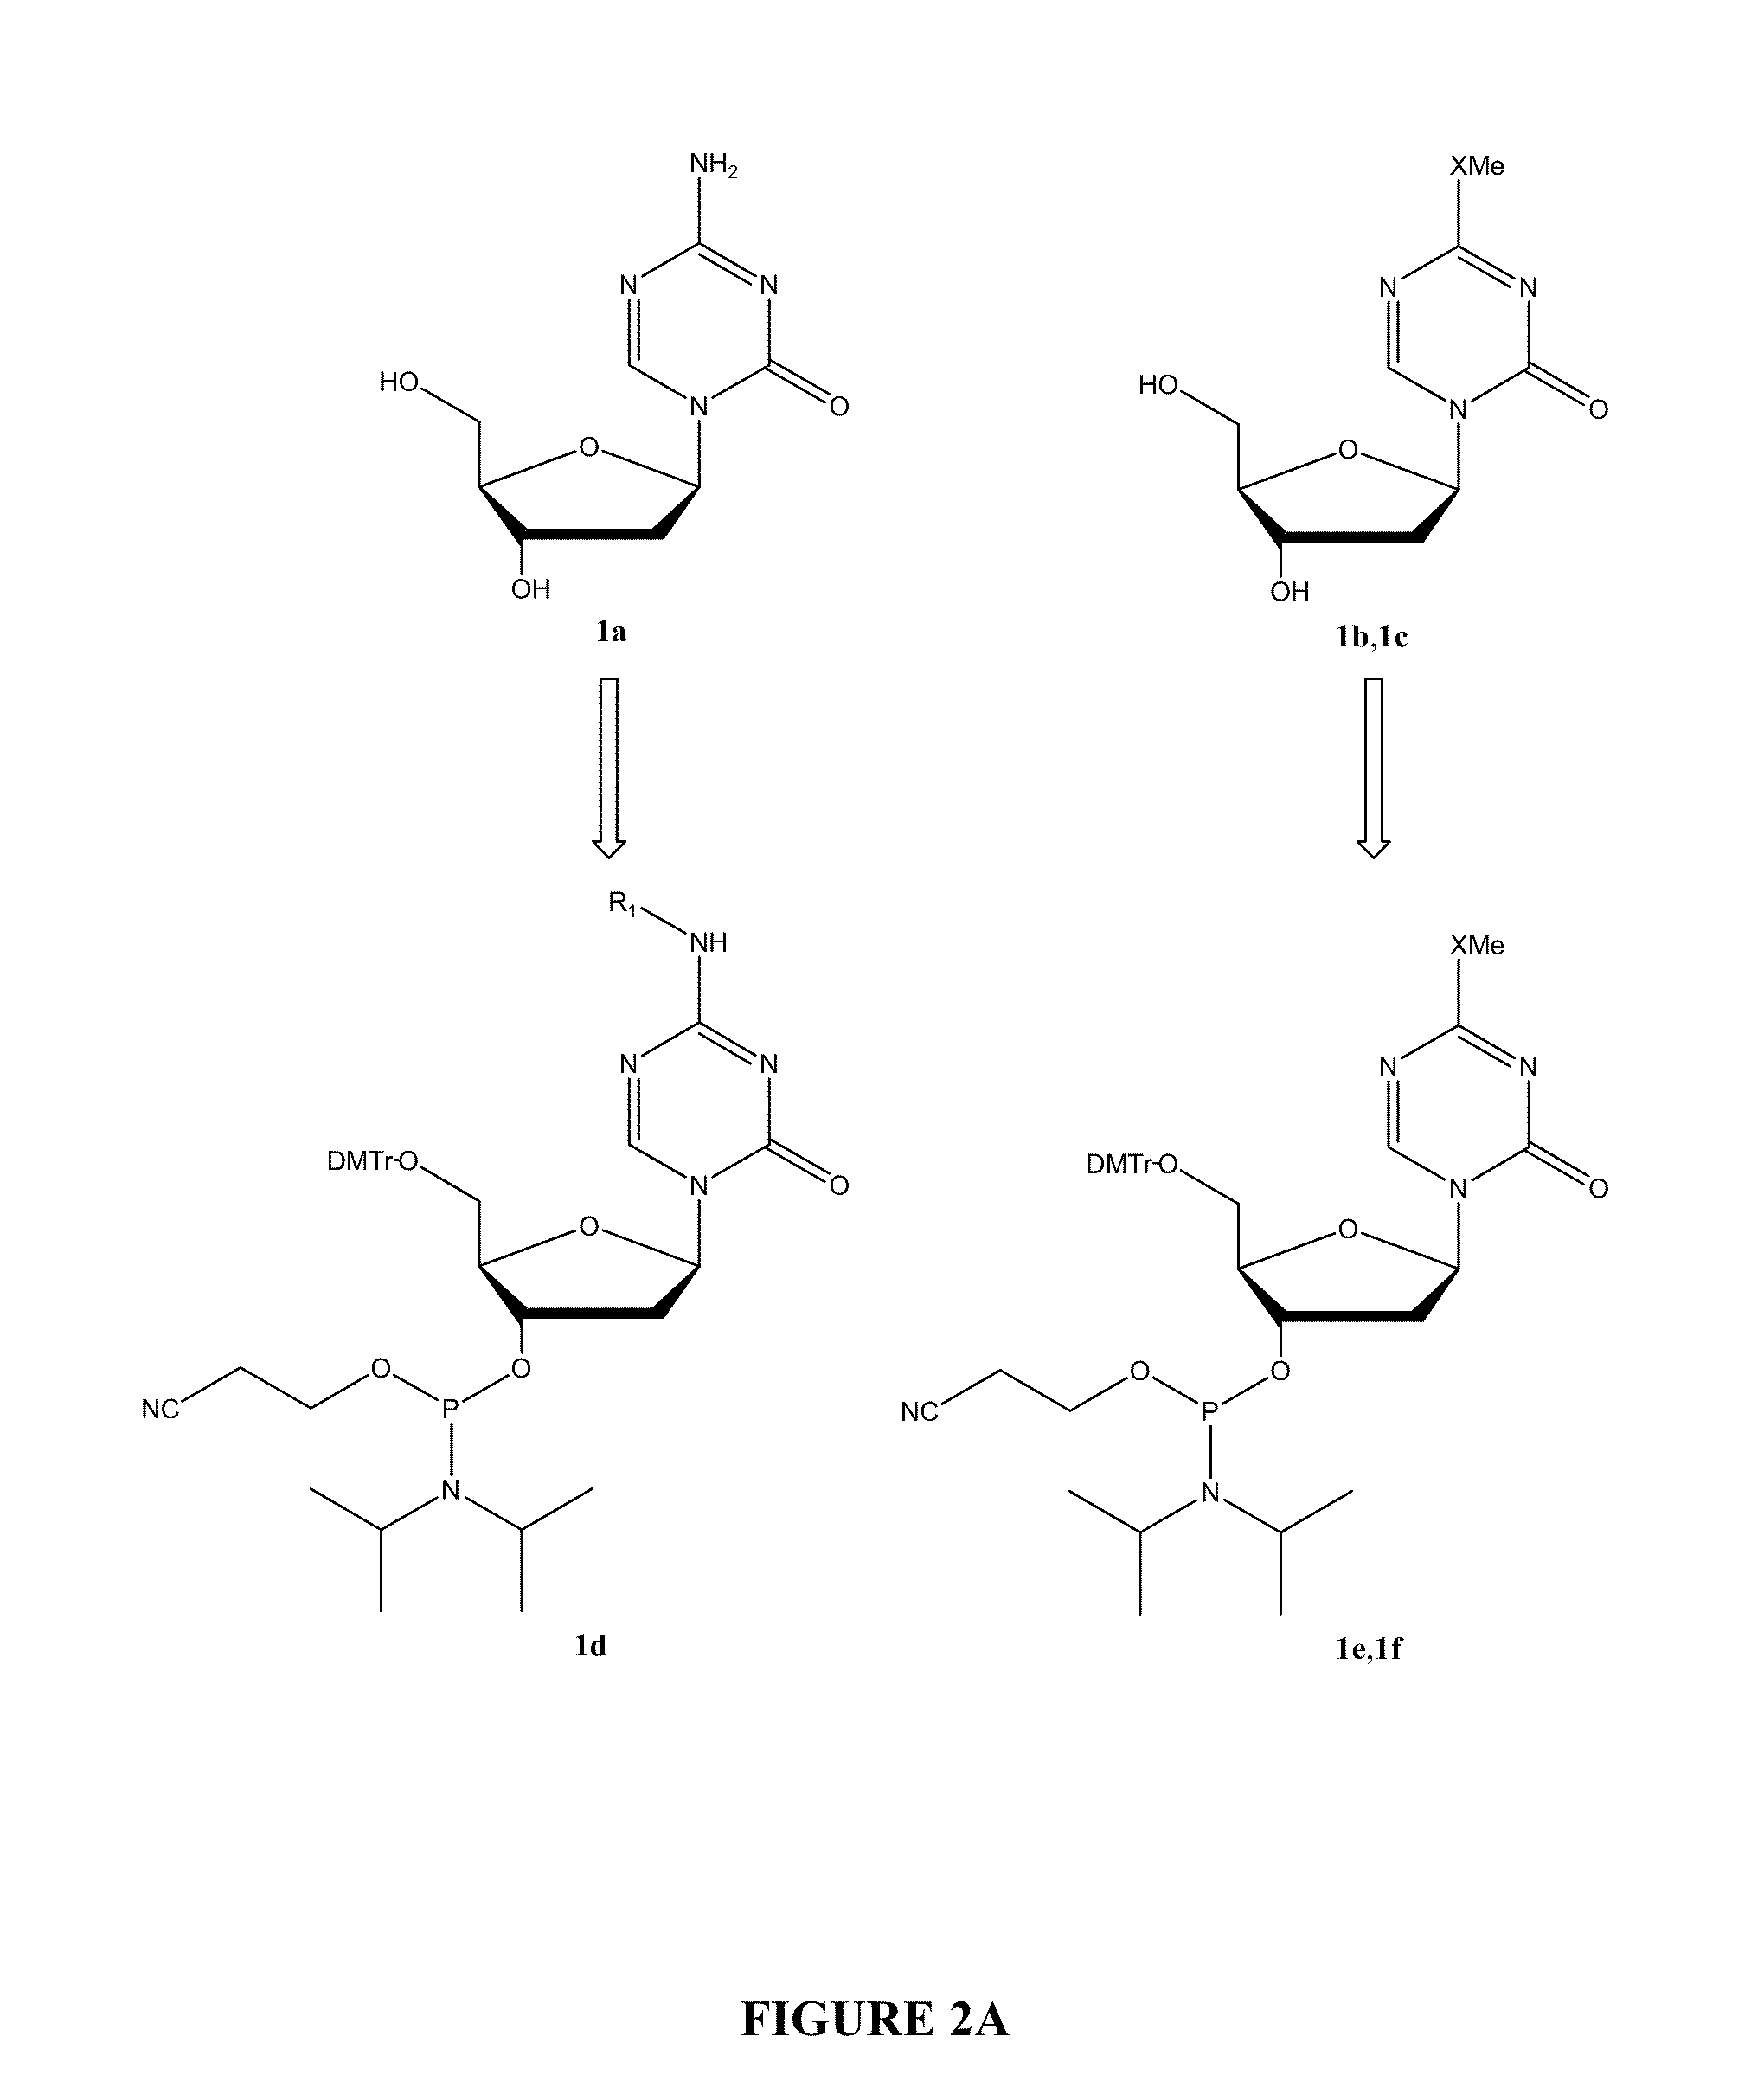 Oligonucleotide analogues incorporating 5-aza-cytosine therein